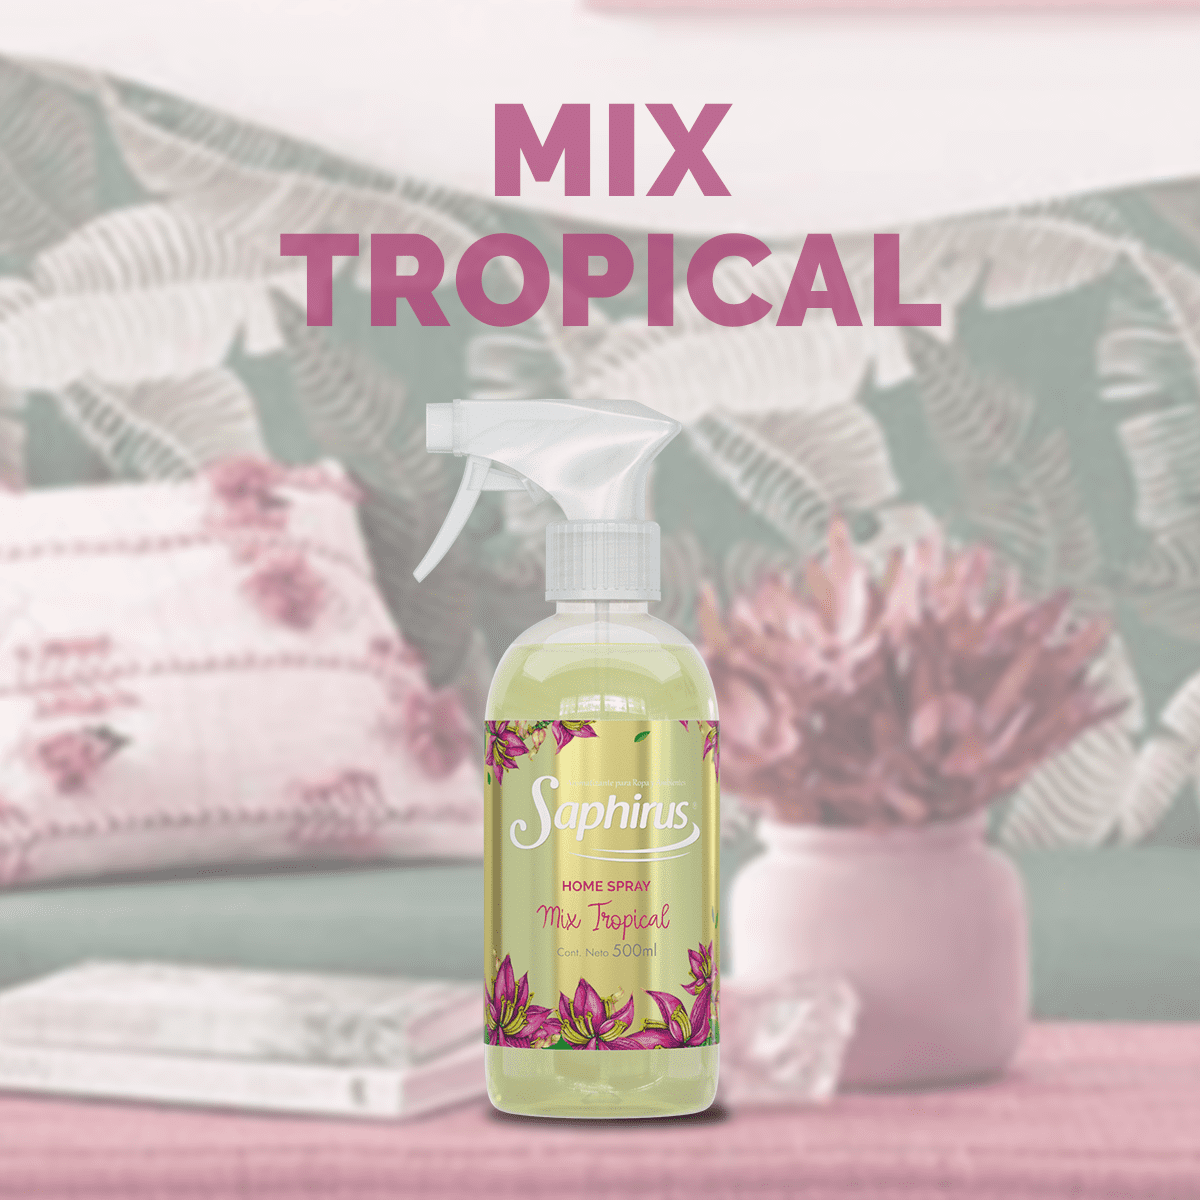 Saphirus Home Spray Mix Tropical